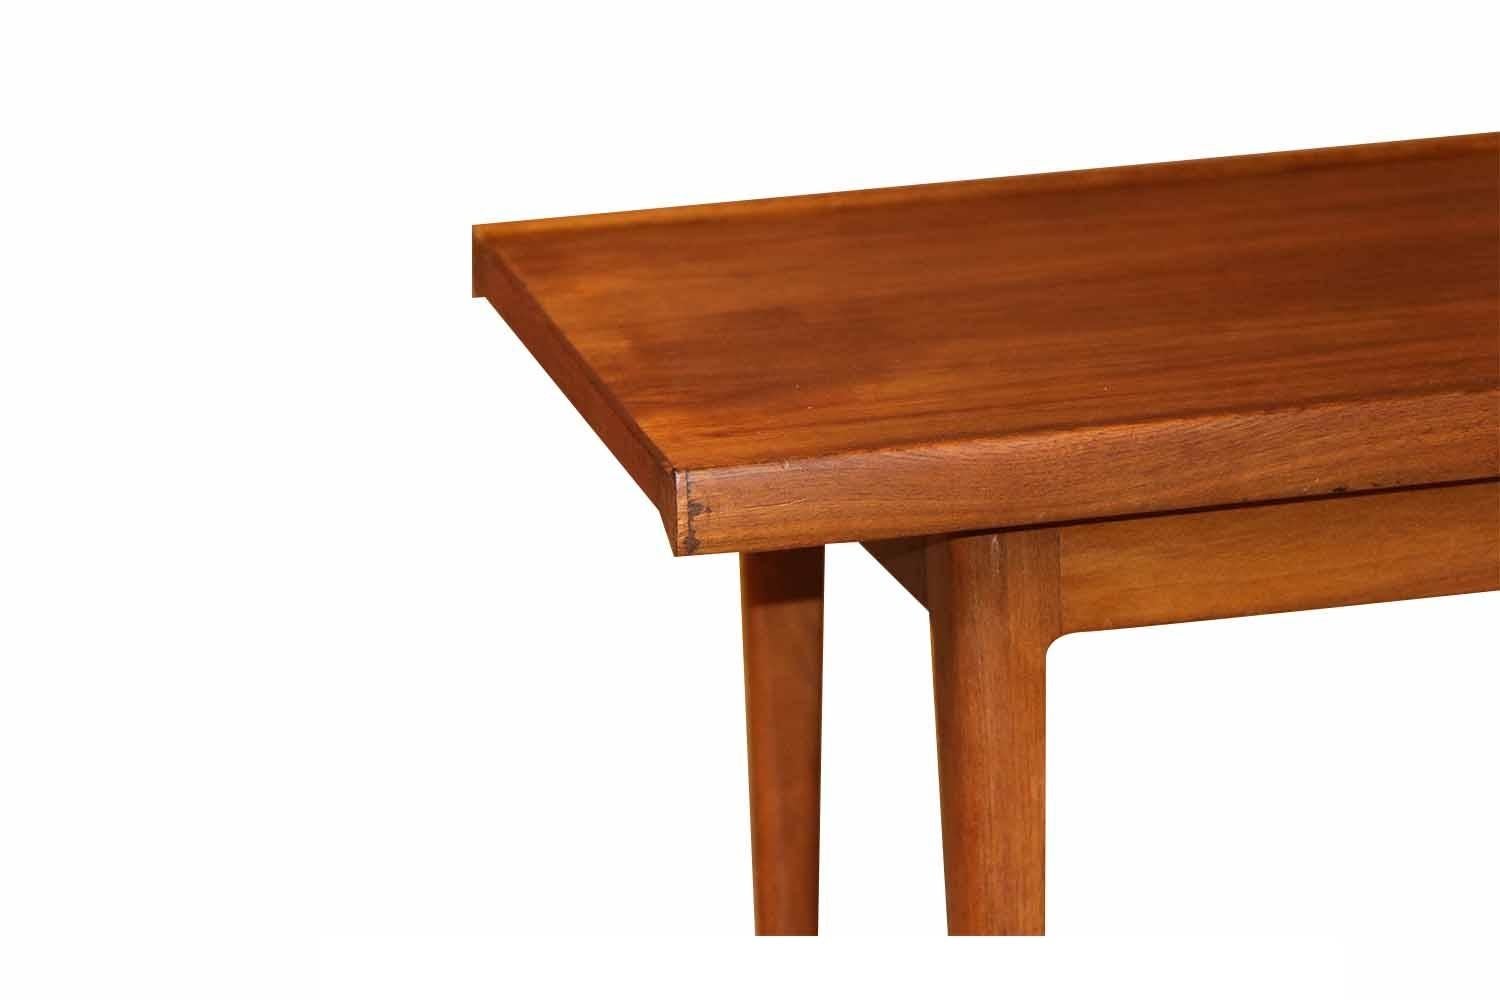 Magnifique table basse/banc de style danois, moderne, rétro, des années 1960, réalisée par Kipp Stewart et Stewart MacDougall pour Drexel, de la série Declaration. La longueur parfaite à associer à un canapé extra long. Le plateau rectangulaire est